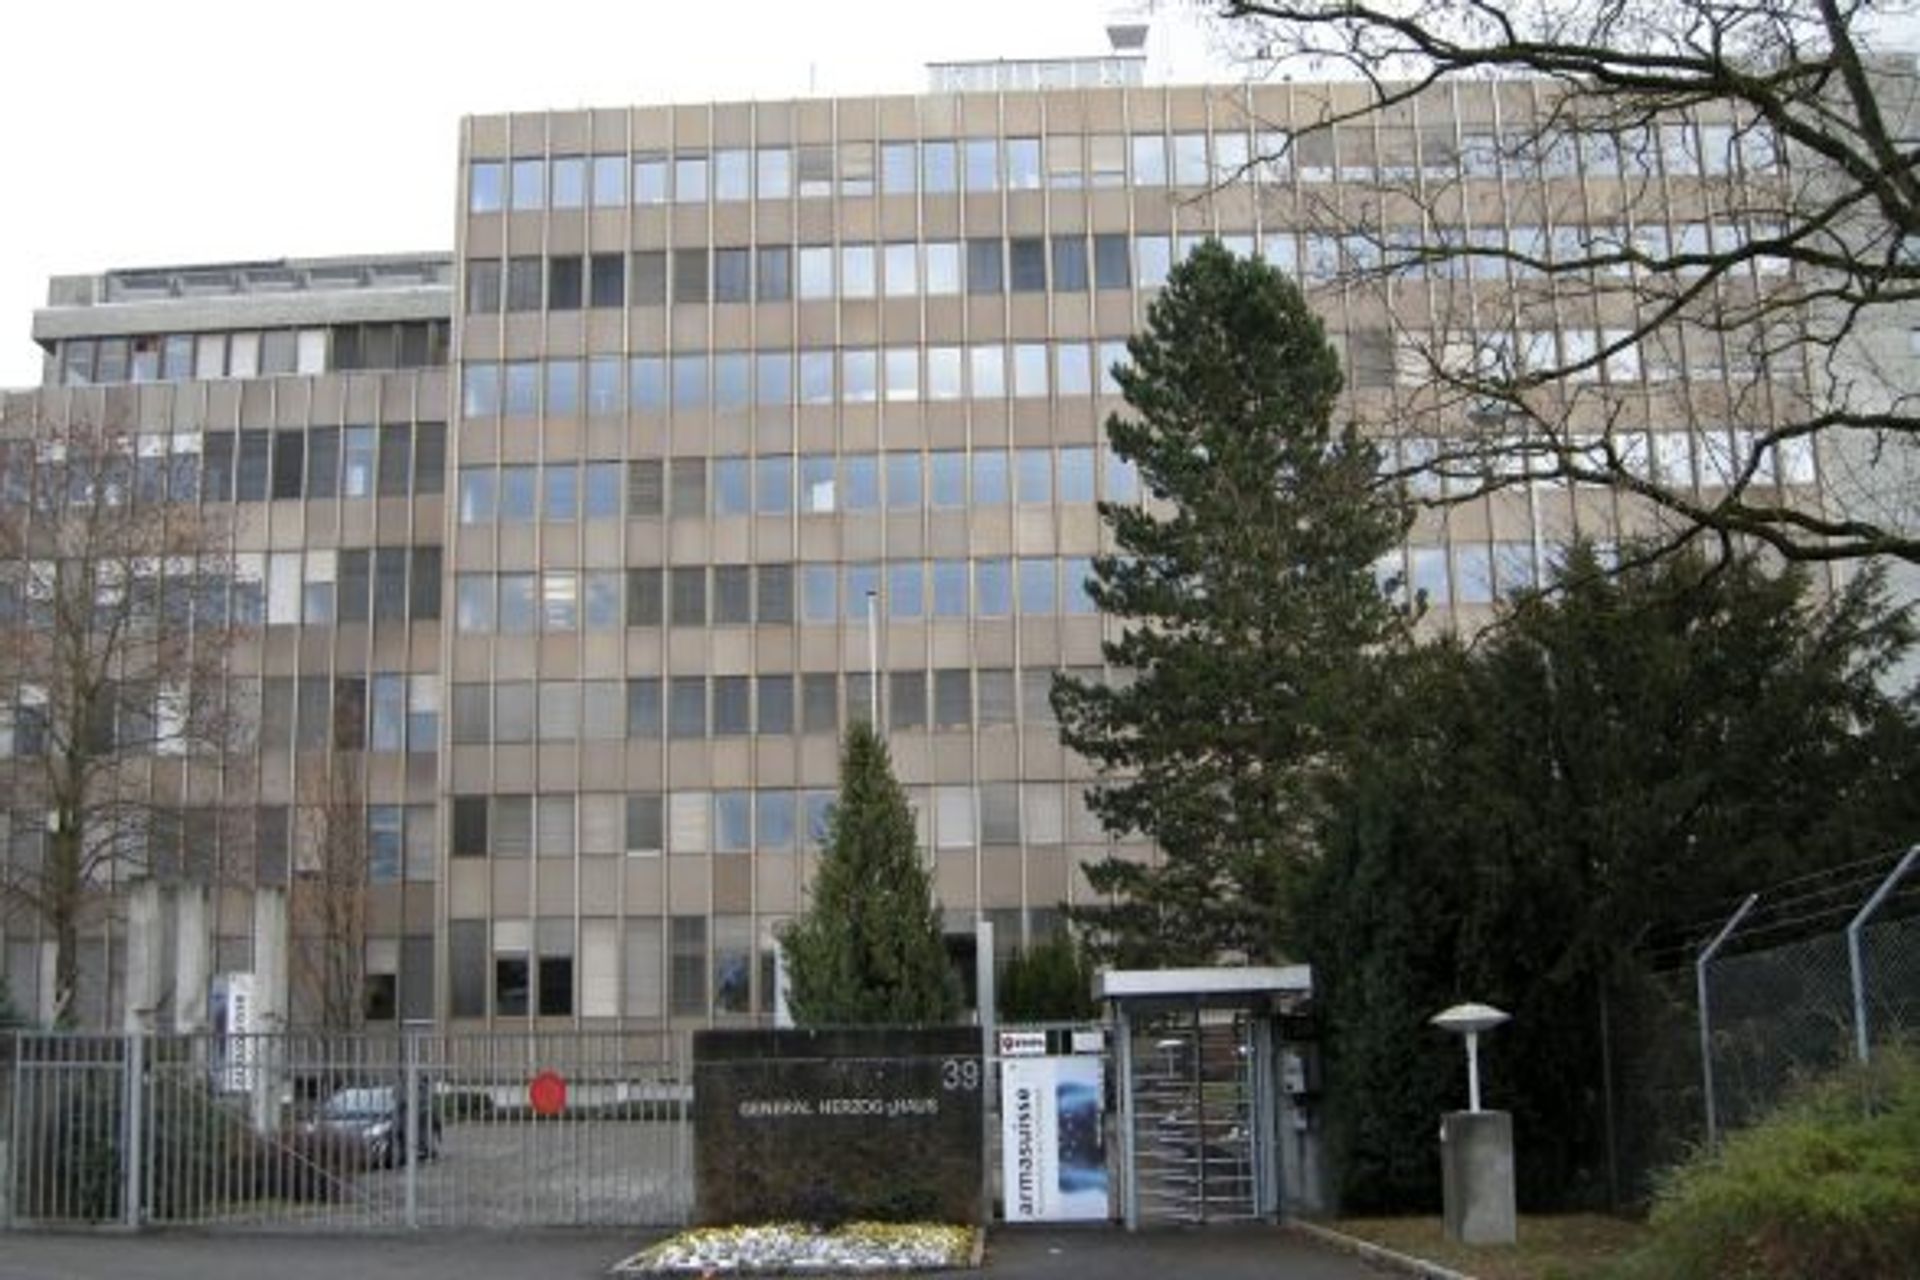 La sede Scienza e Tecnologia di armasuisse, l'Ufficio Federale dell'armamento, si trova a Thun (Canton Berna) al civico 39 di Feuerwerkerstrasse